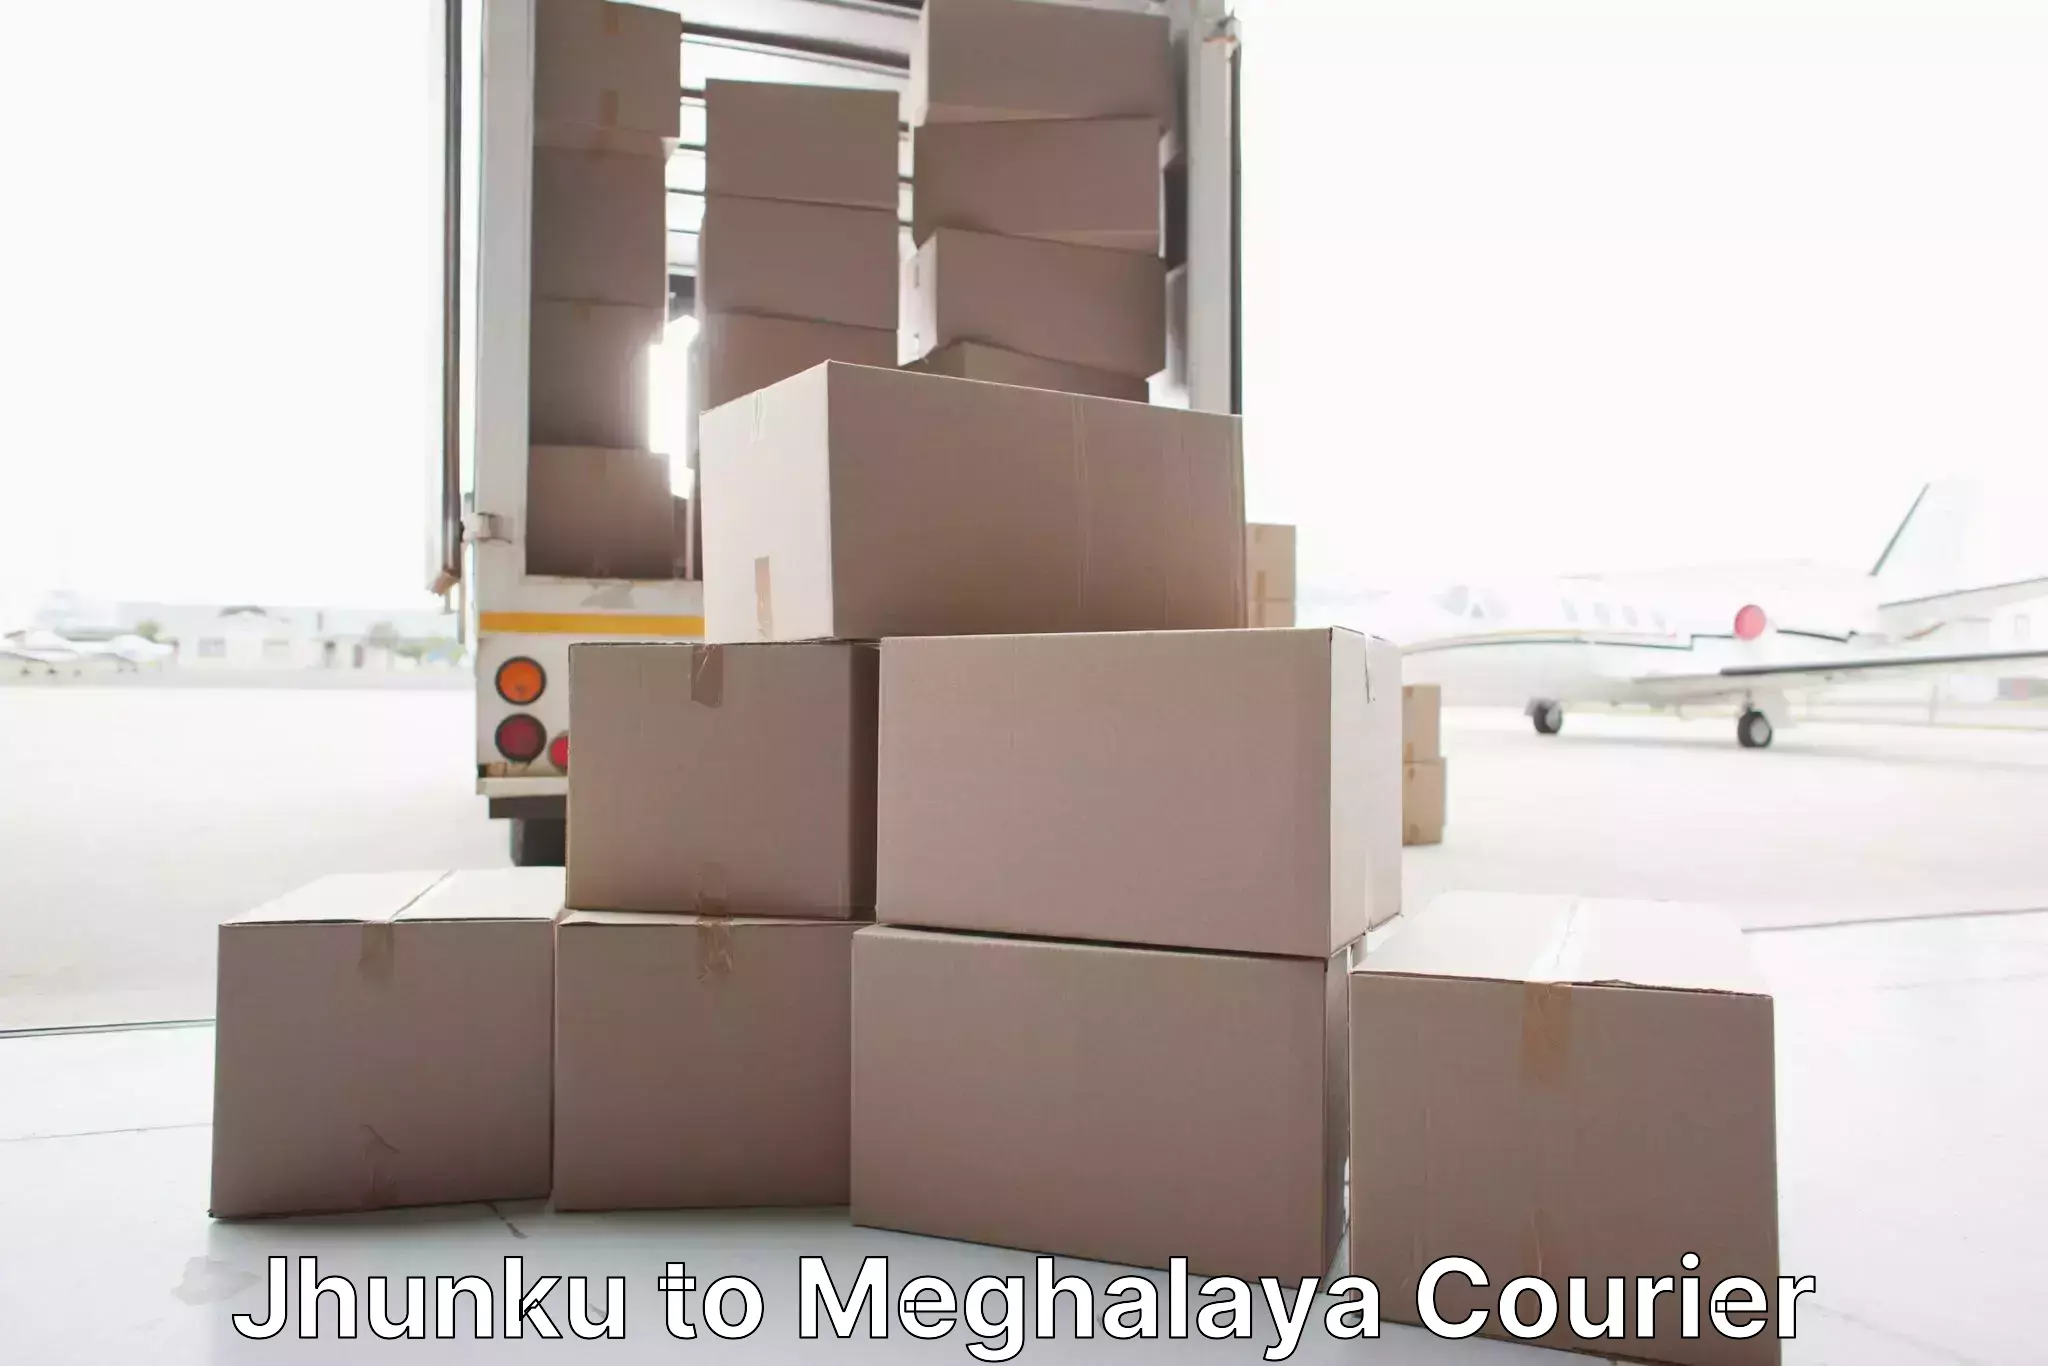 Professional packing and transport Jhunku to Phulbari